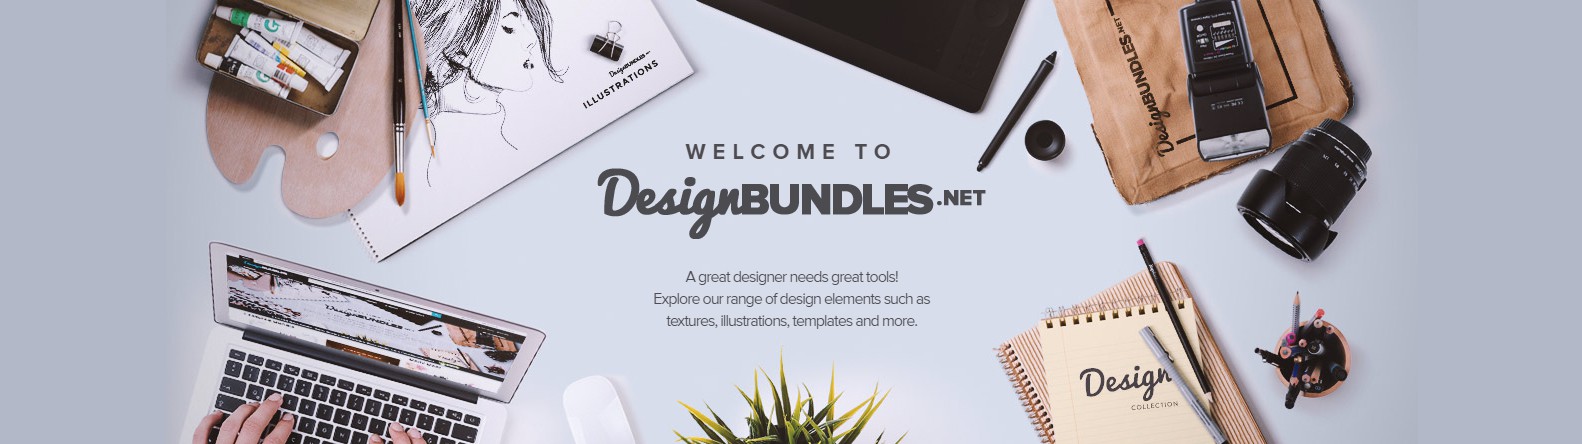 Premium, Free Design Resources by DesignBundles.net